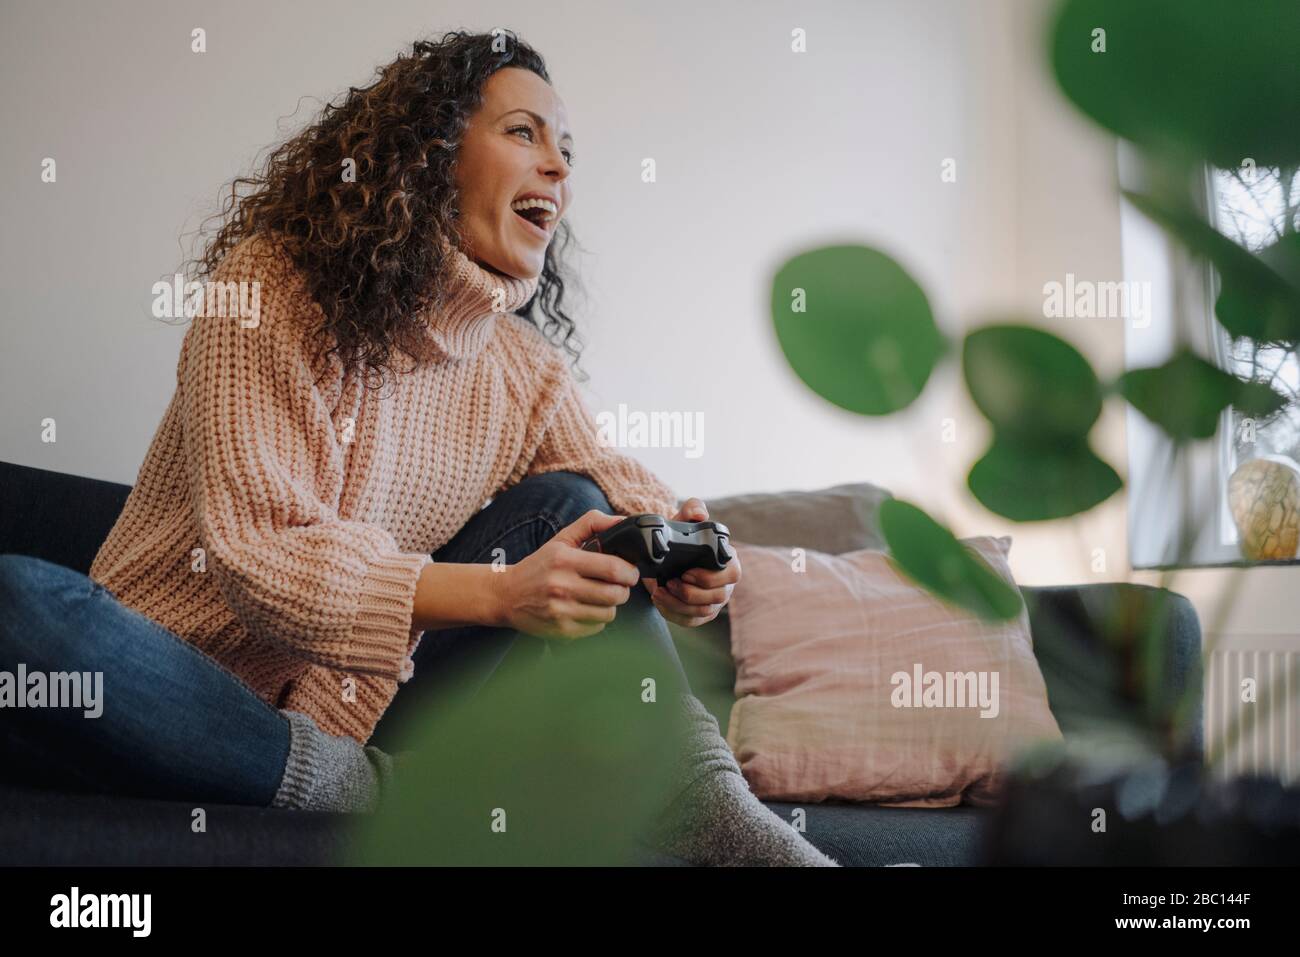 Mujer sentada en el sofá, divirtiéndose, jugando con una consola de juegos Foto de stock